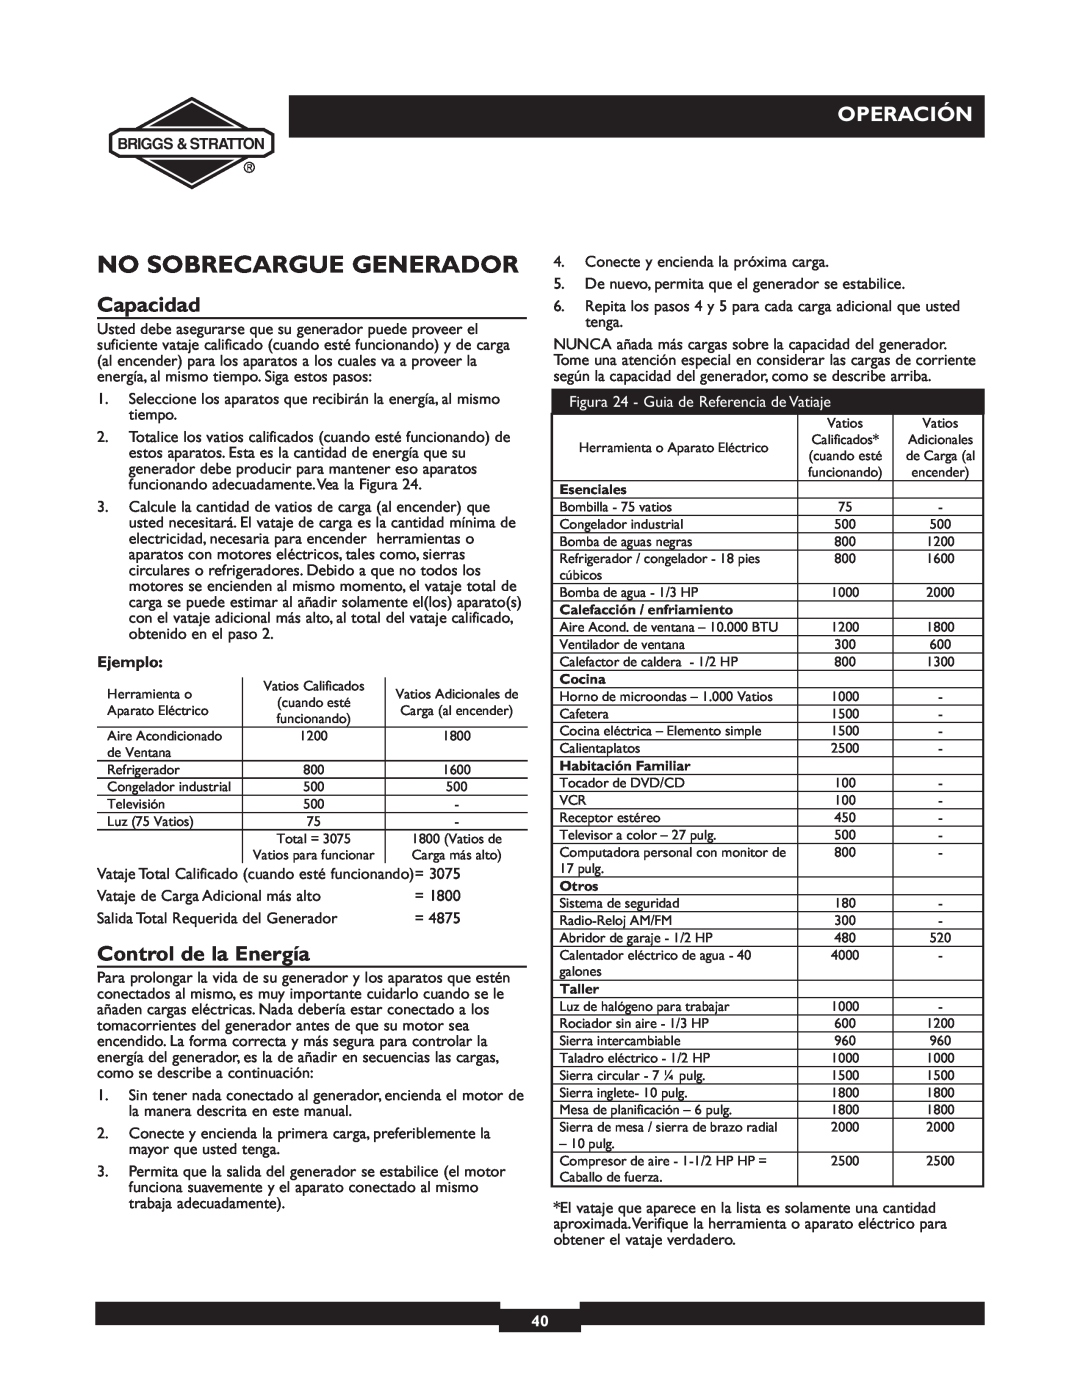 Briggs & Stratton 30238 owner manual No Sobrecargue Generador, Capacidad, Control de la Energía, Operación, Ejemplo 